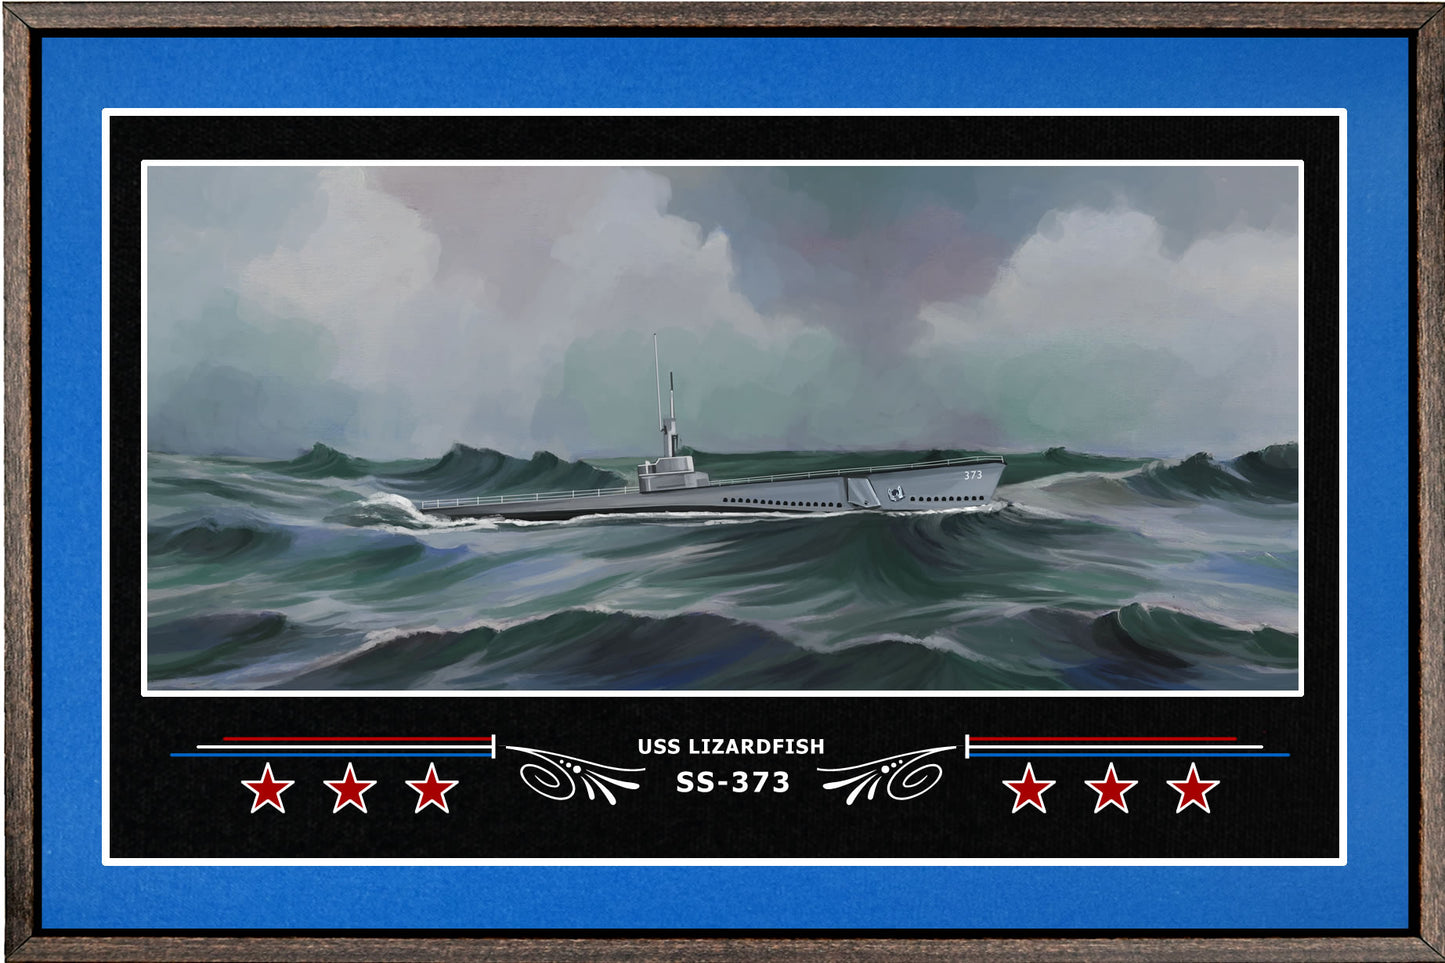 USS LIZARDFISH SS 373 BOX FRAMED CANVAS ART BLUE